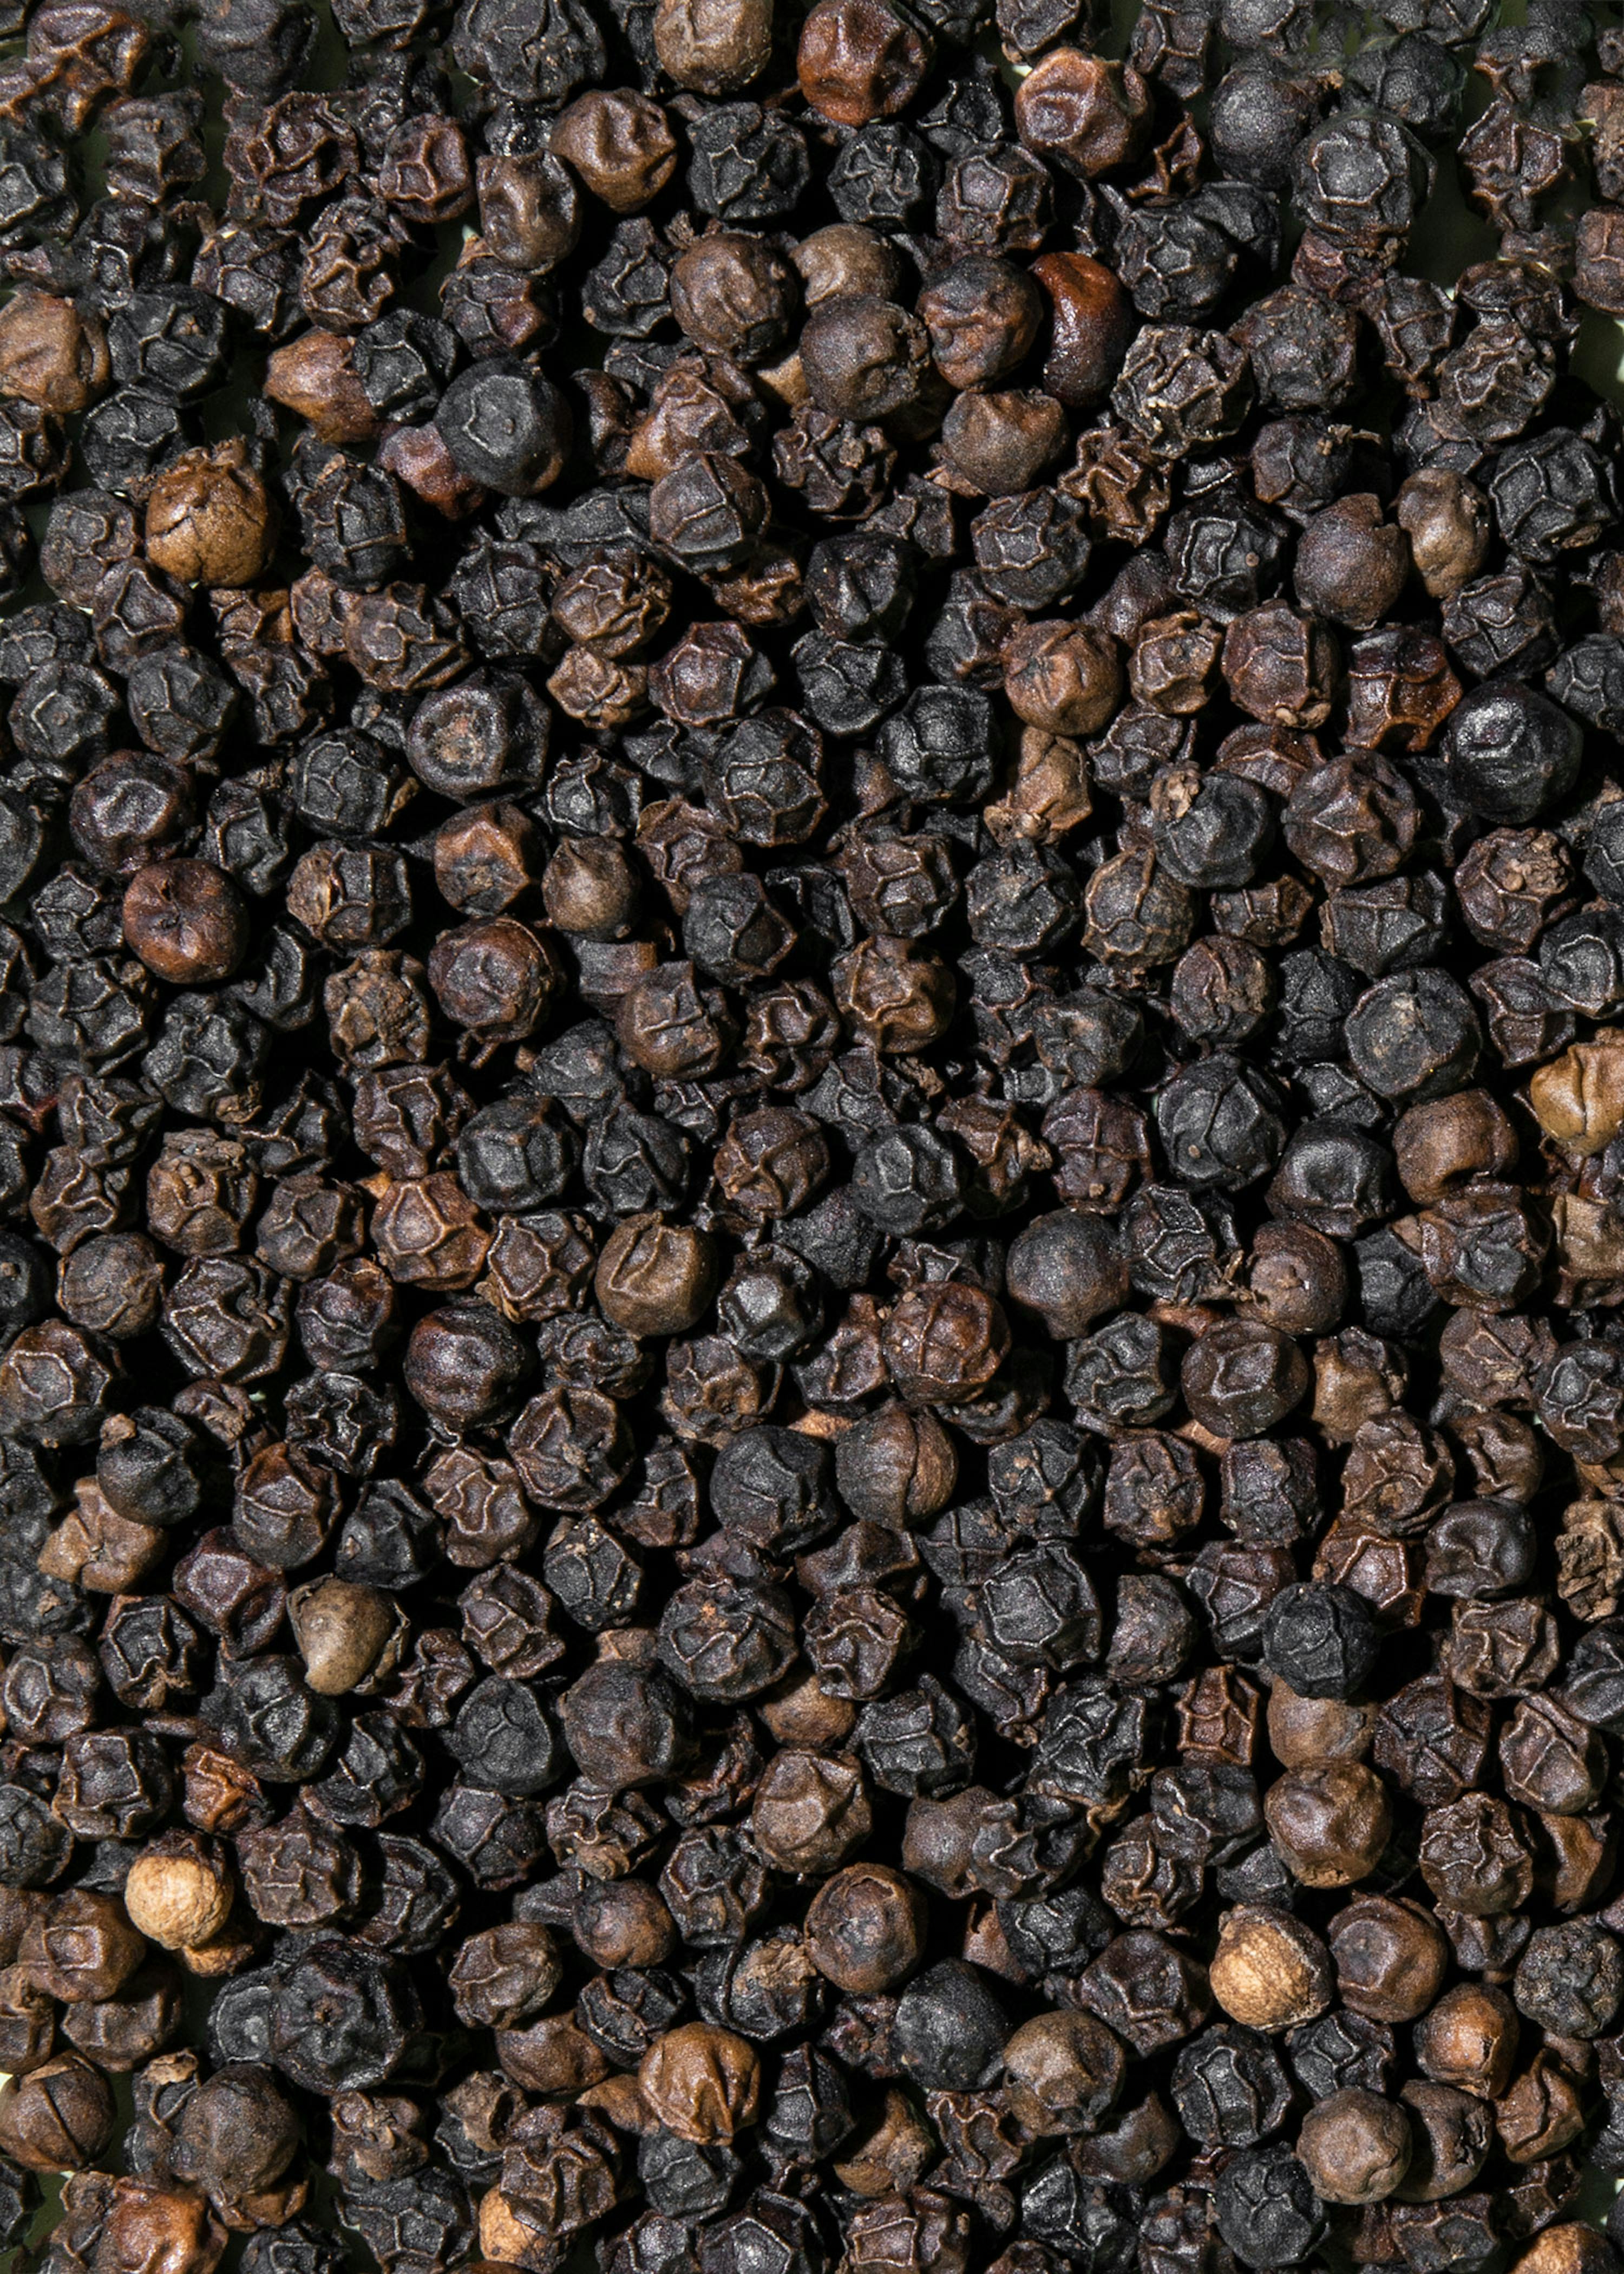 Achetez notre poivre noir bio en grains entiers 1 kg